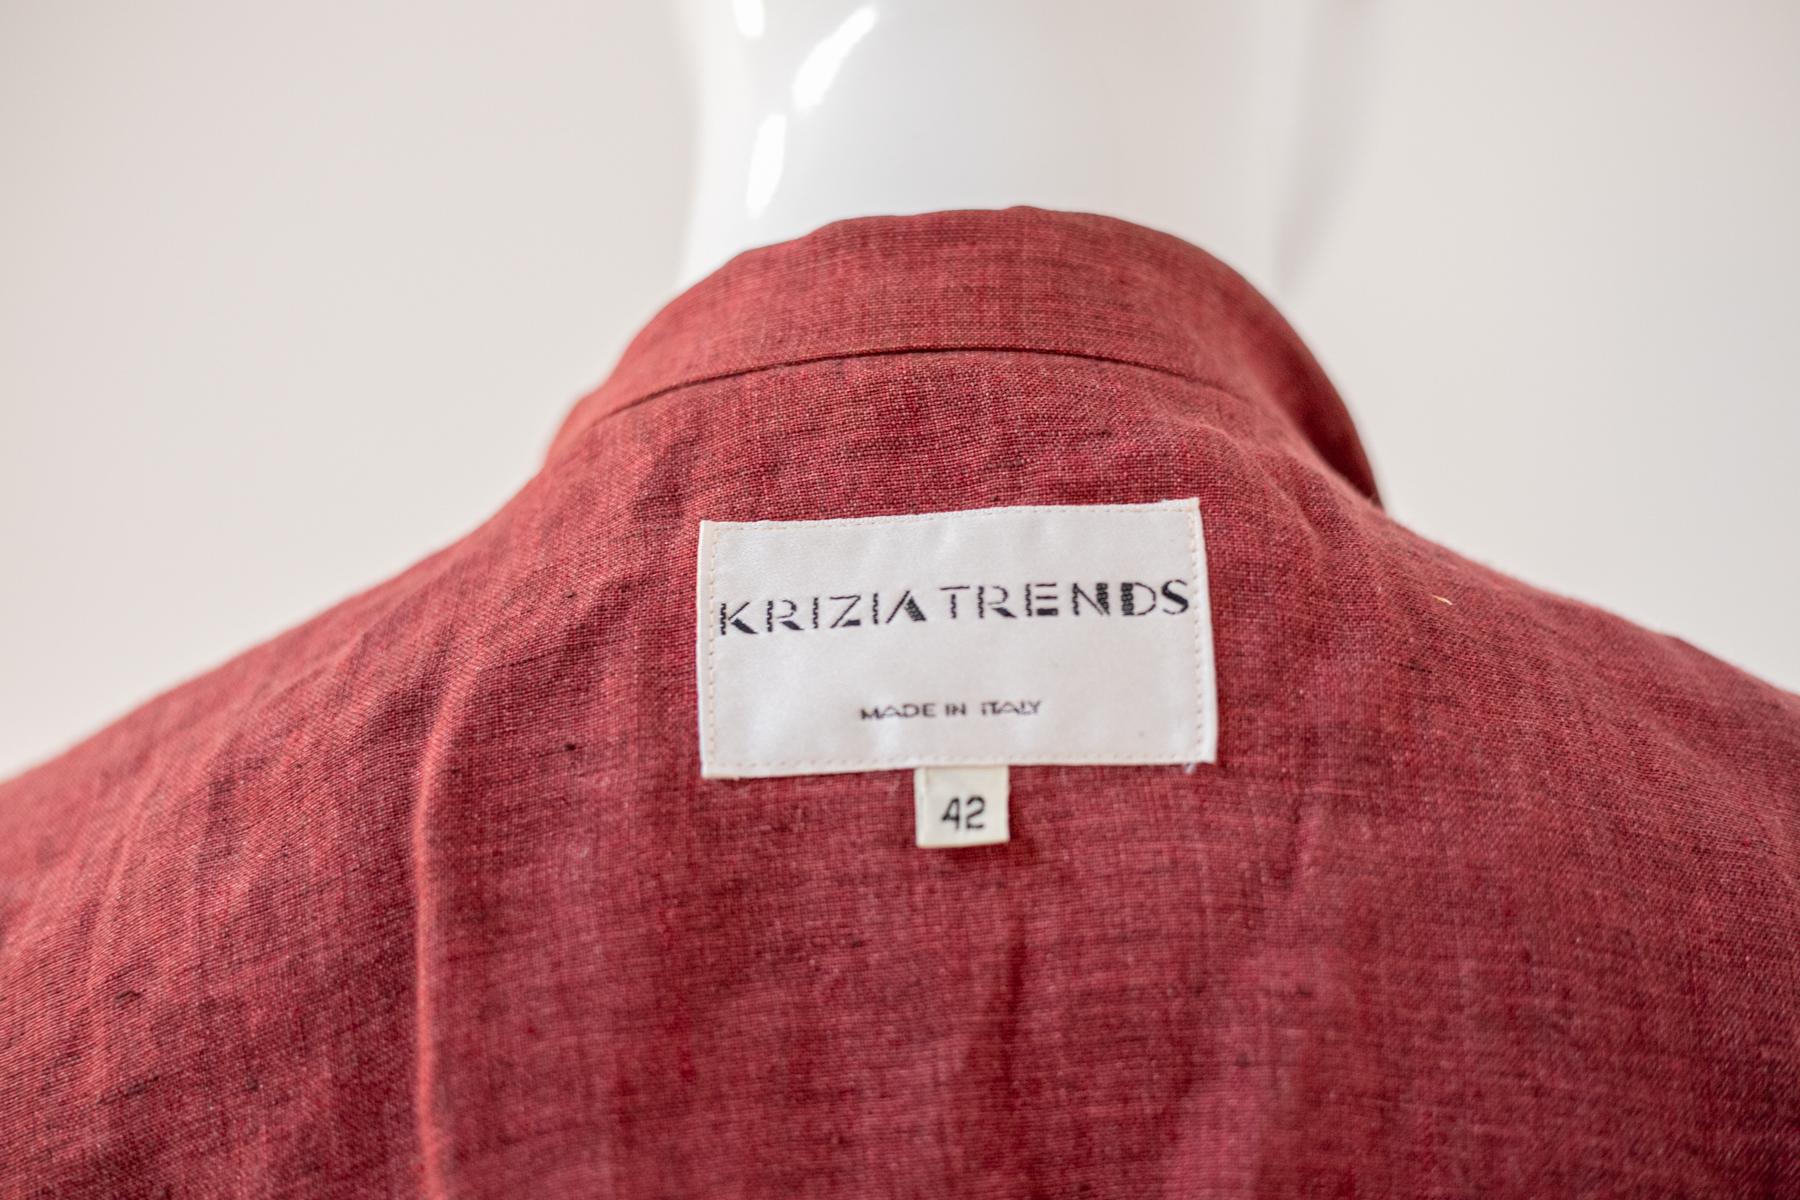 Belle et fraîche chemise vintage en lin conçue par Krizia dans les années 1990, fabriquée en Italie.
Le col a la coupe typique de la liste, avec la fente au milieu, très doux se relie à la partie centrale de la chemise composée de 3 boutons ronds